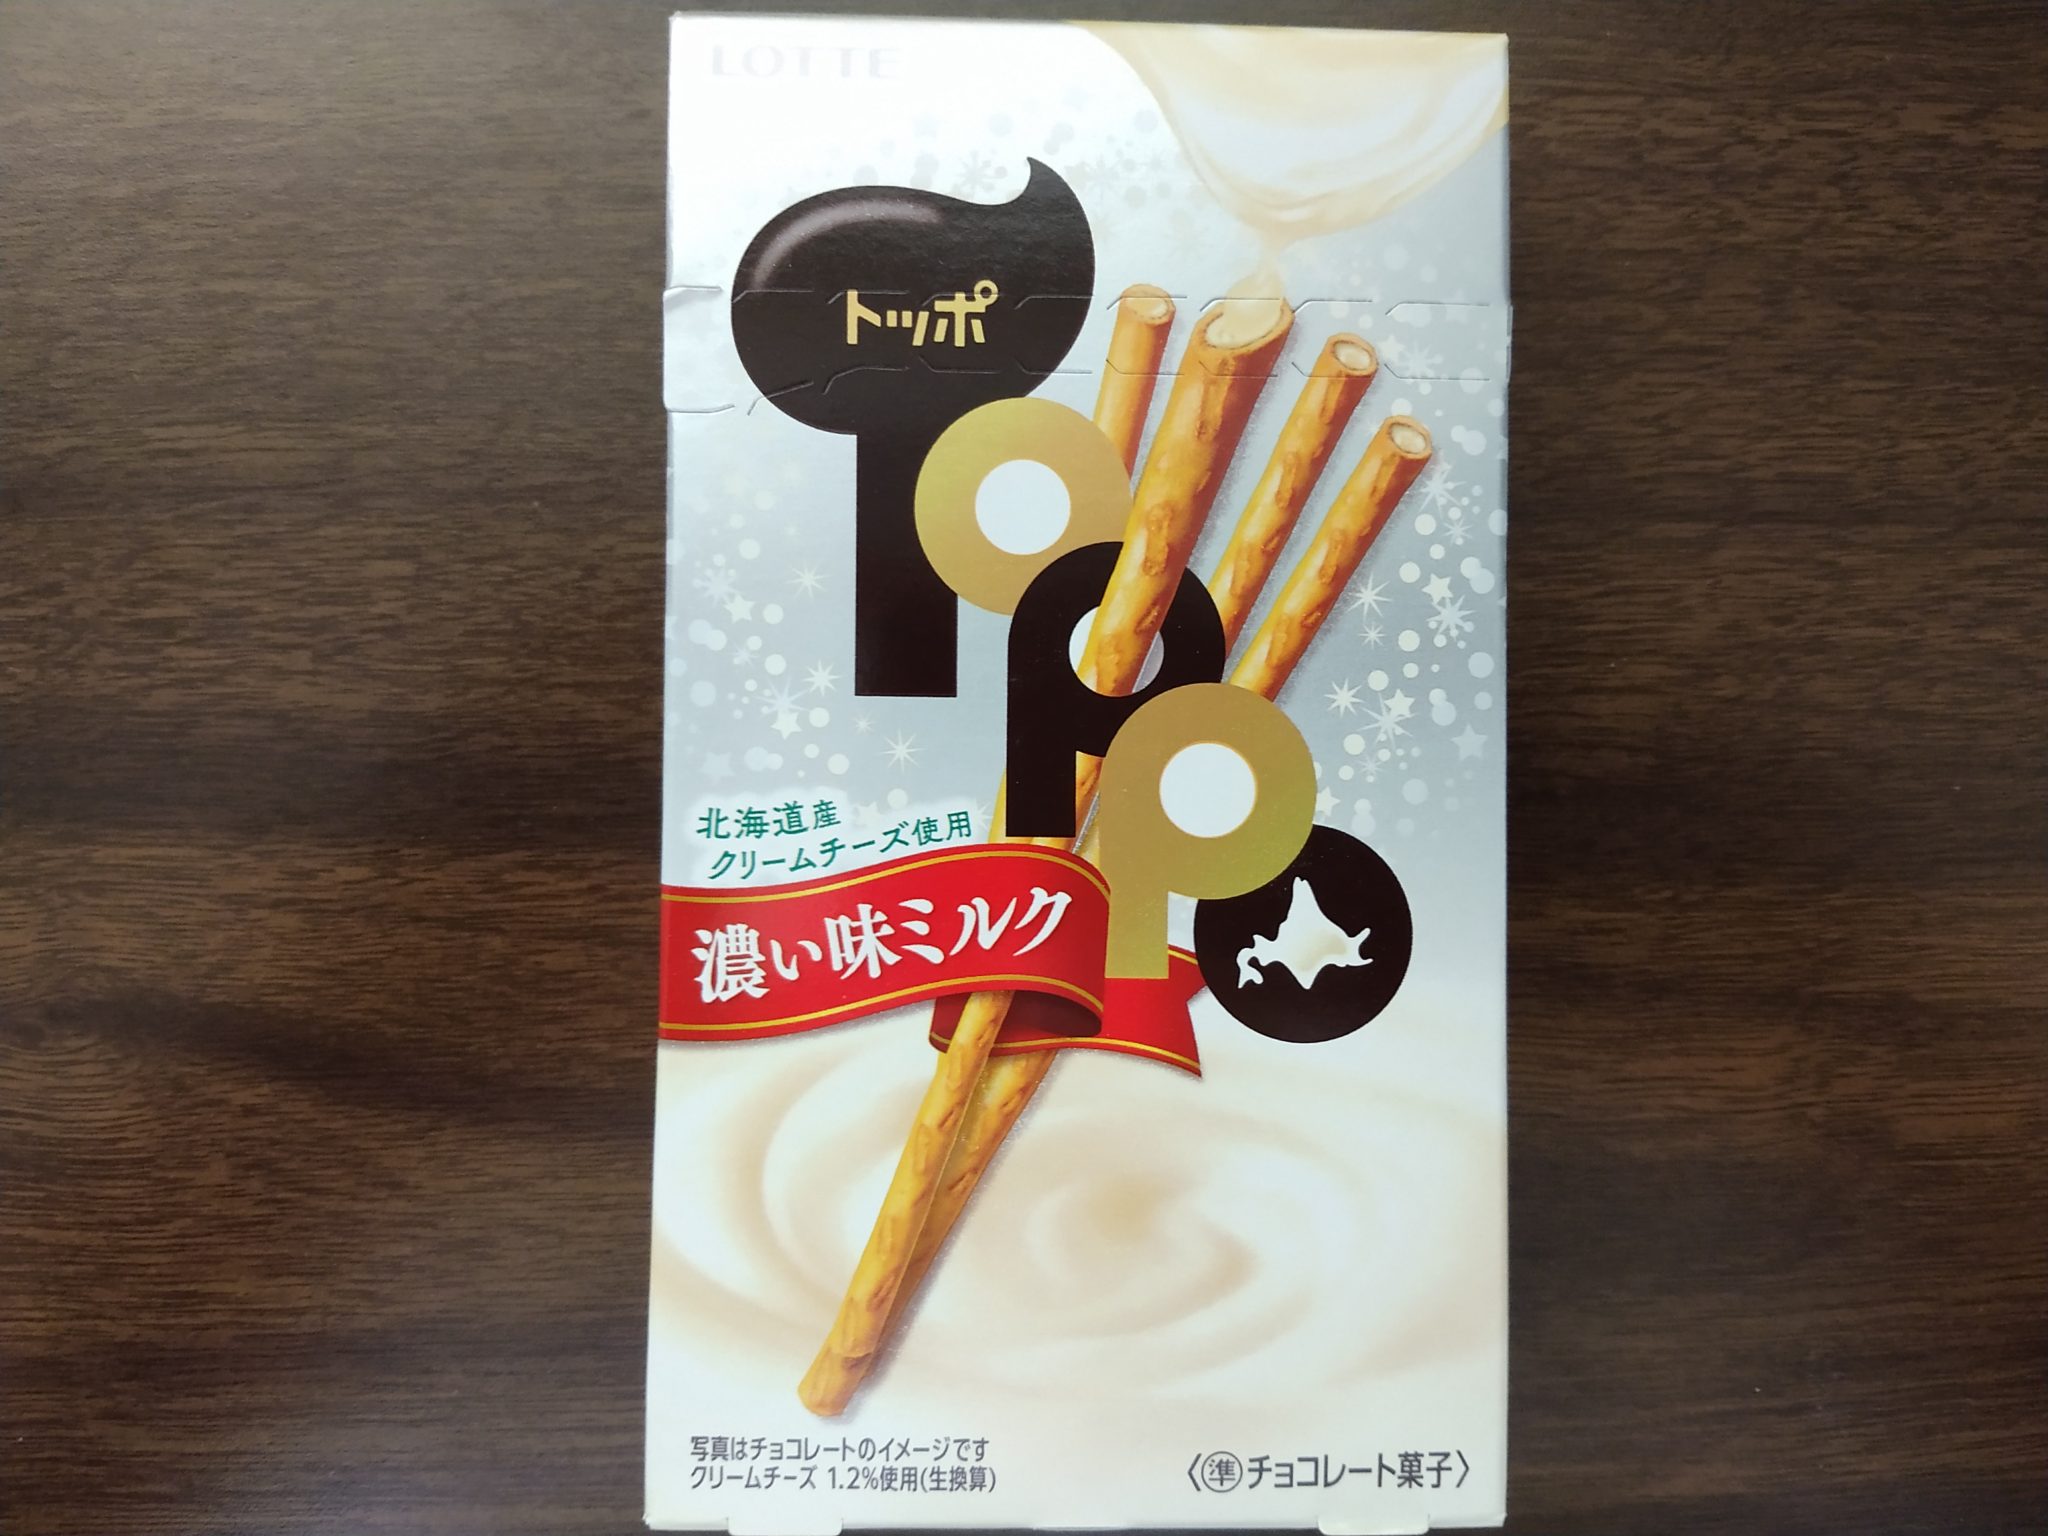 Toppo – Hokkaido Milk Cream Cheese